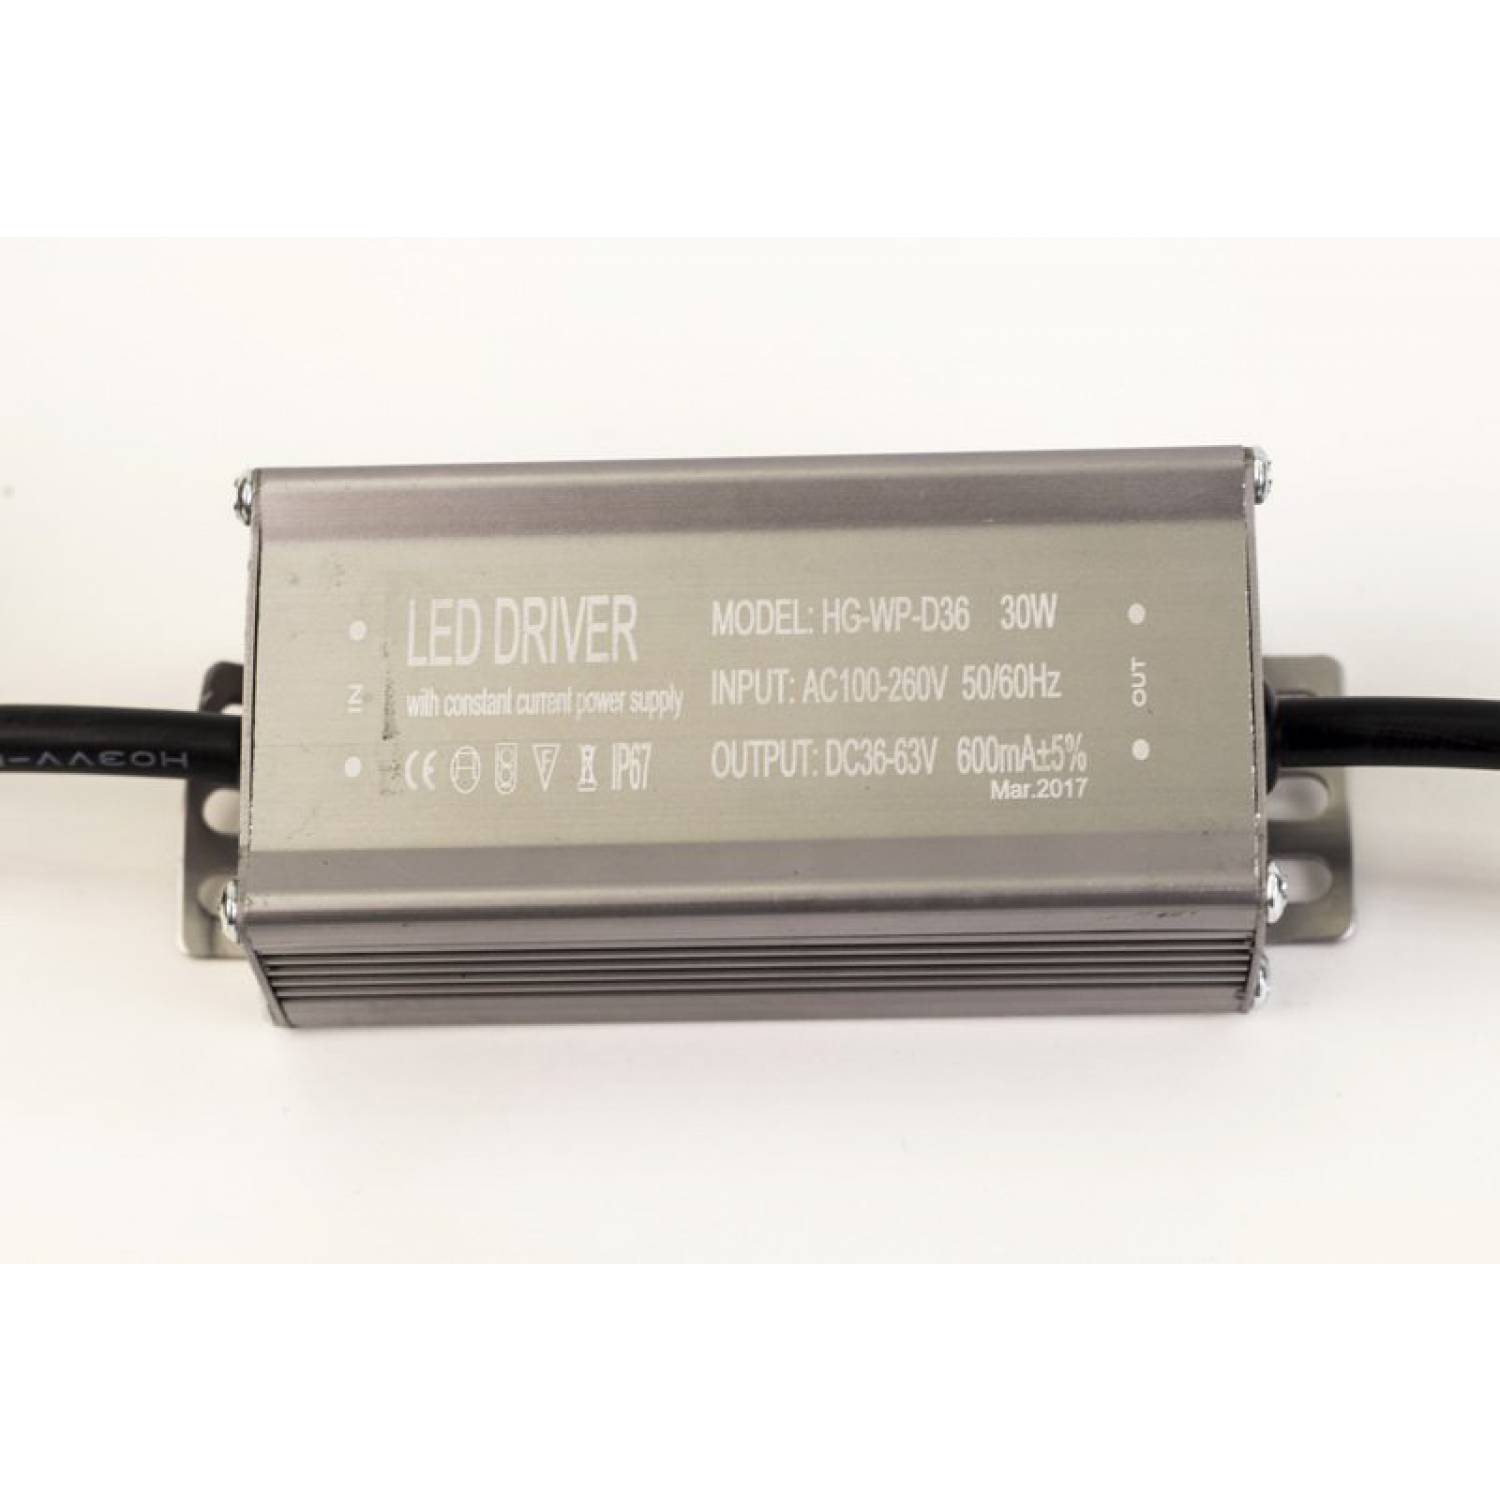 Драйвер для светодиодов 30W 600mA (HG-WP-D36/1) с проводами